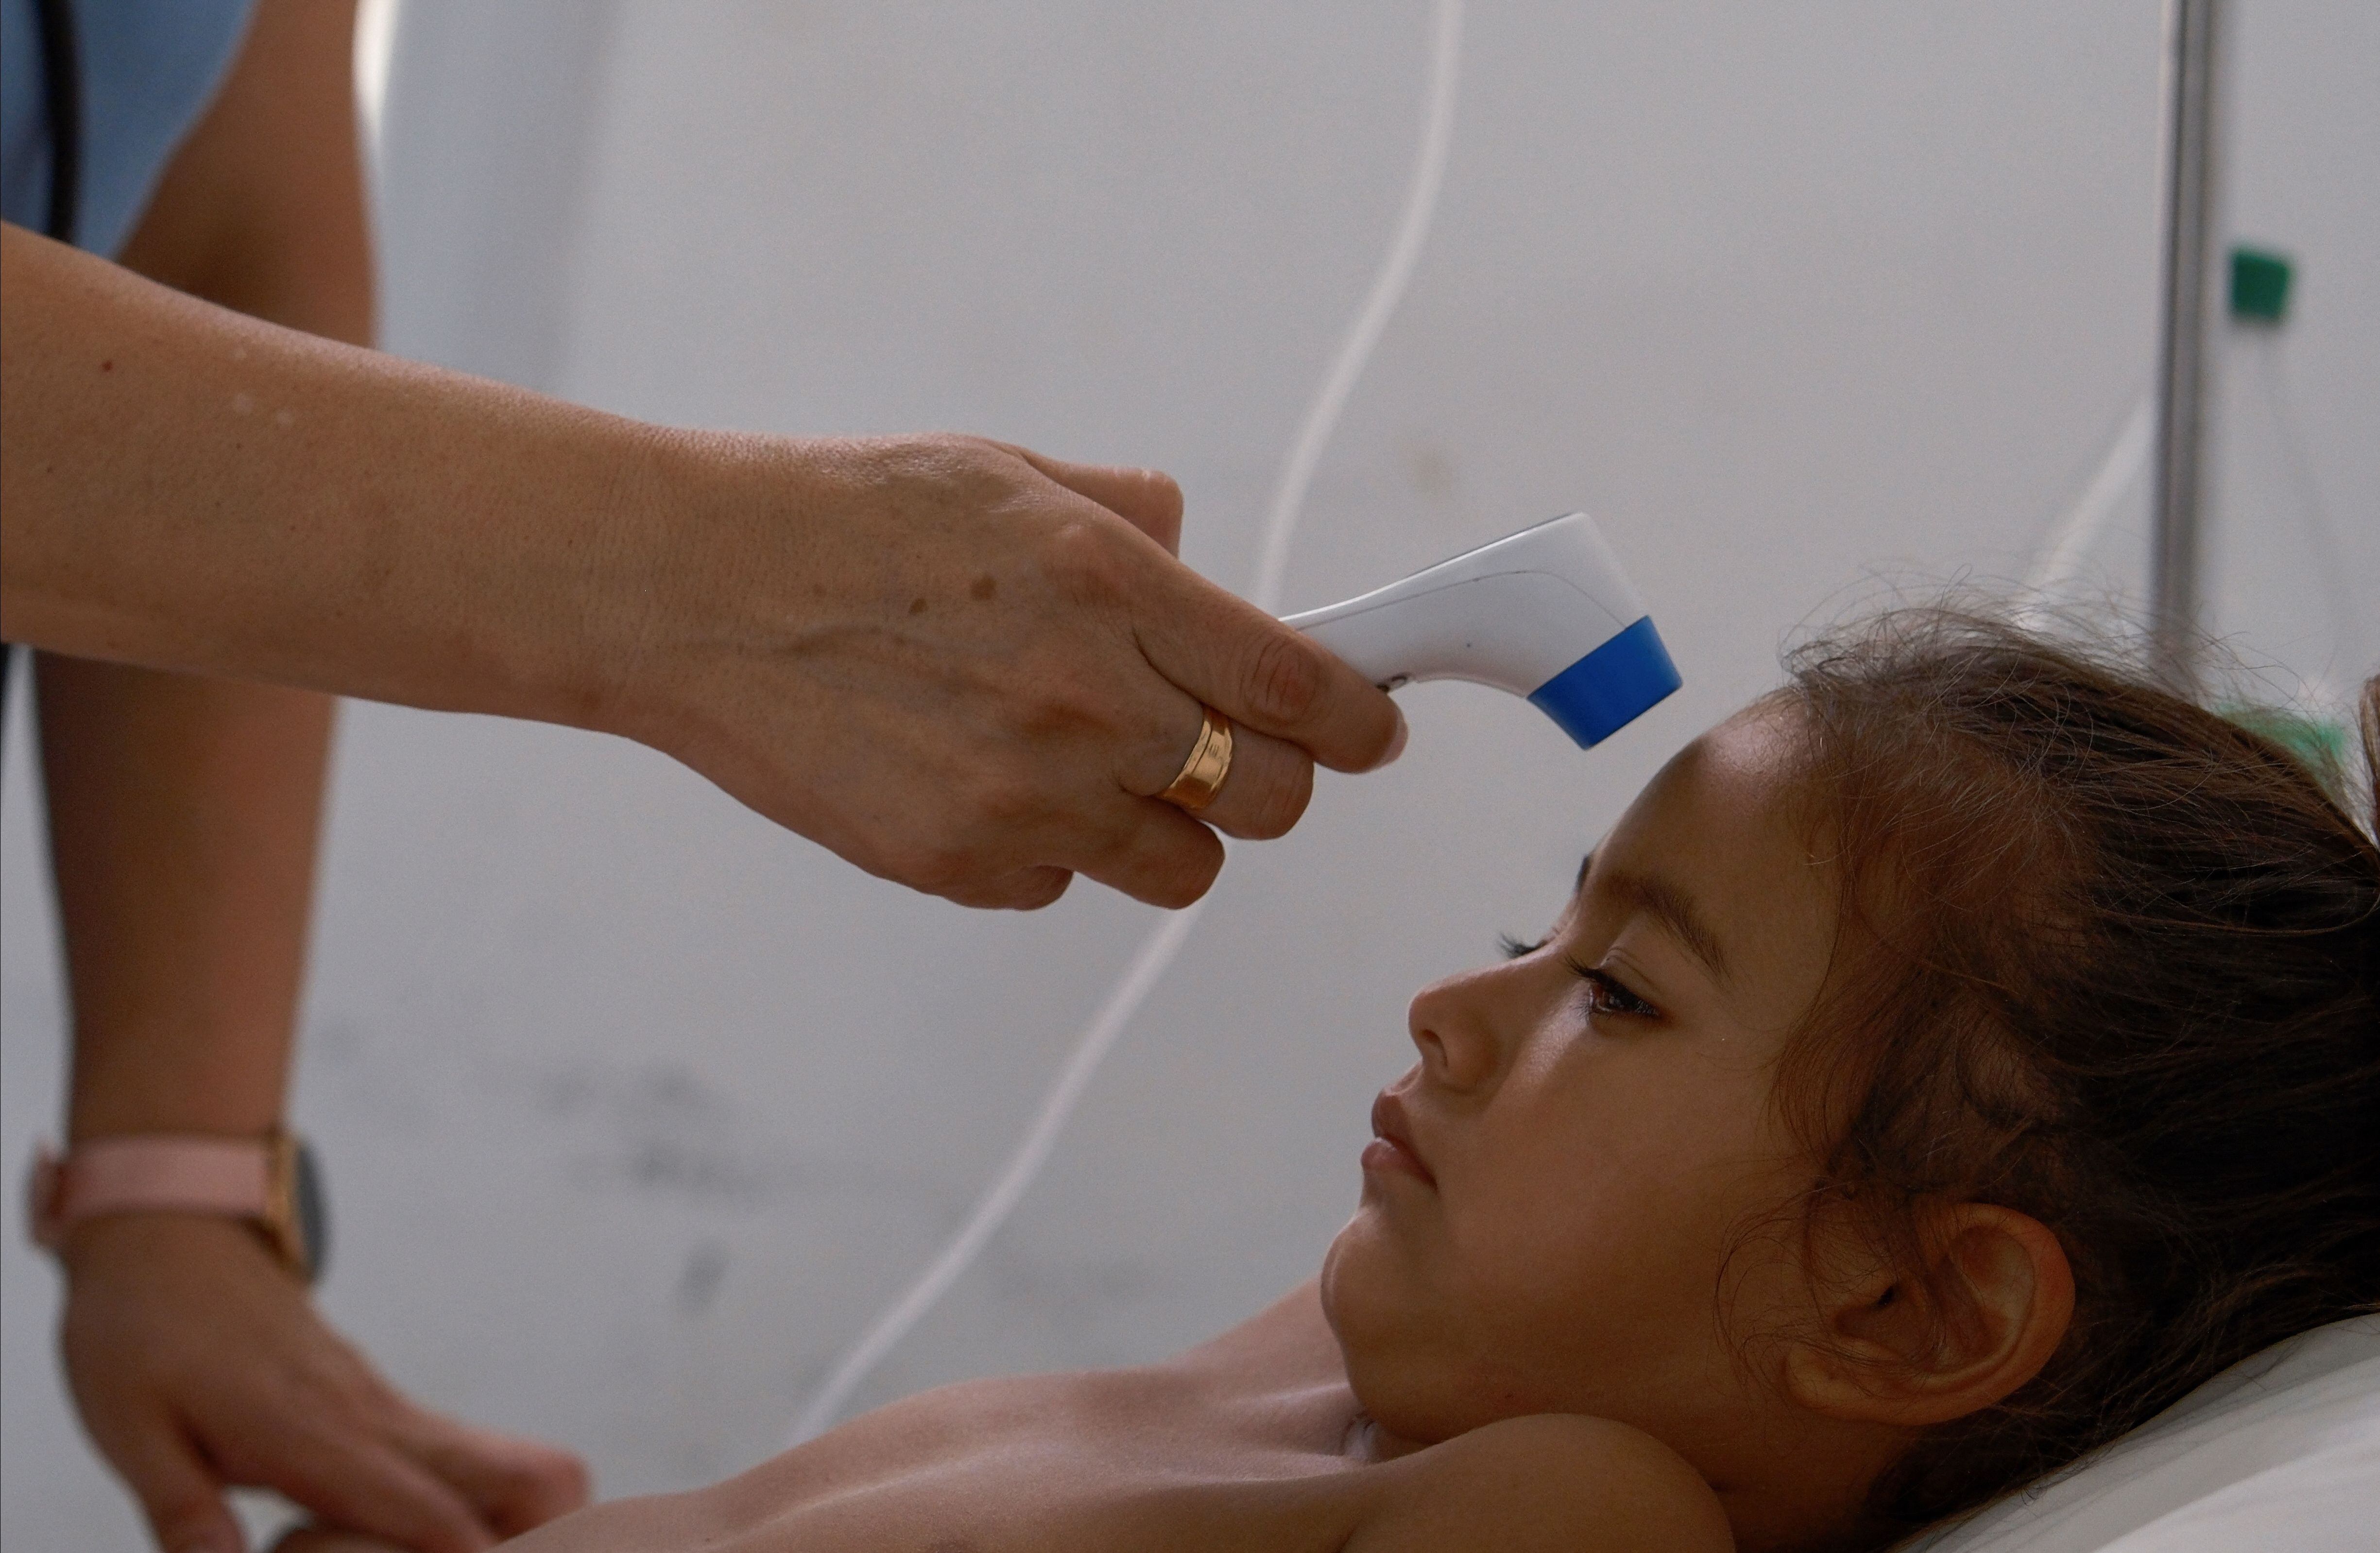 Varios niños han sido atendidos en las guardias por sus síntomas relacionados con dengue (REUTERS/Javier Corbalan)